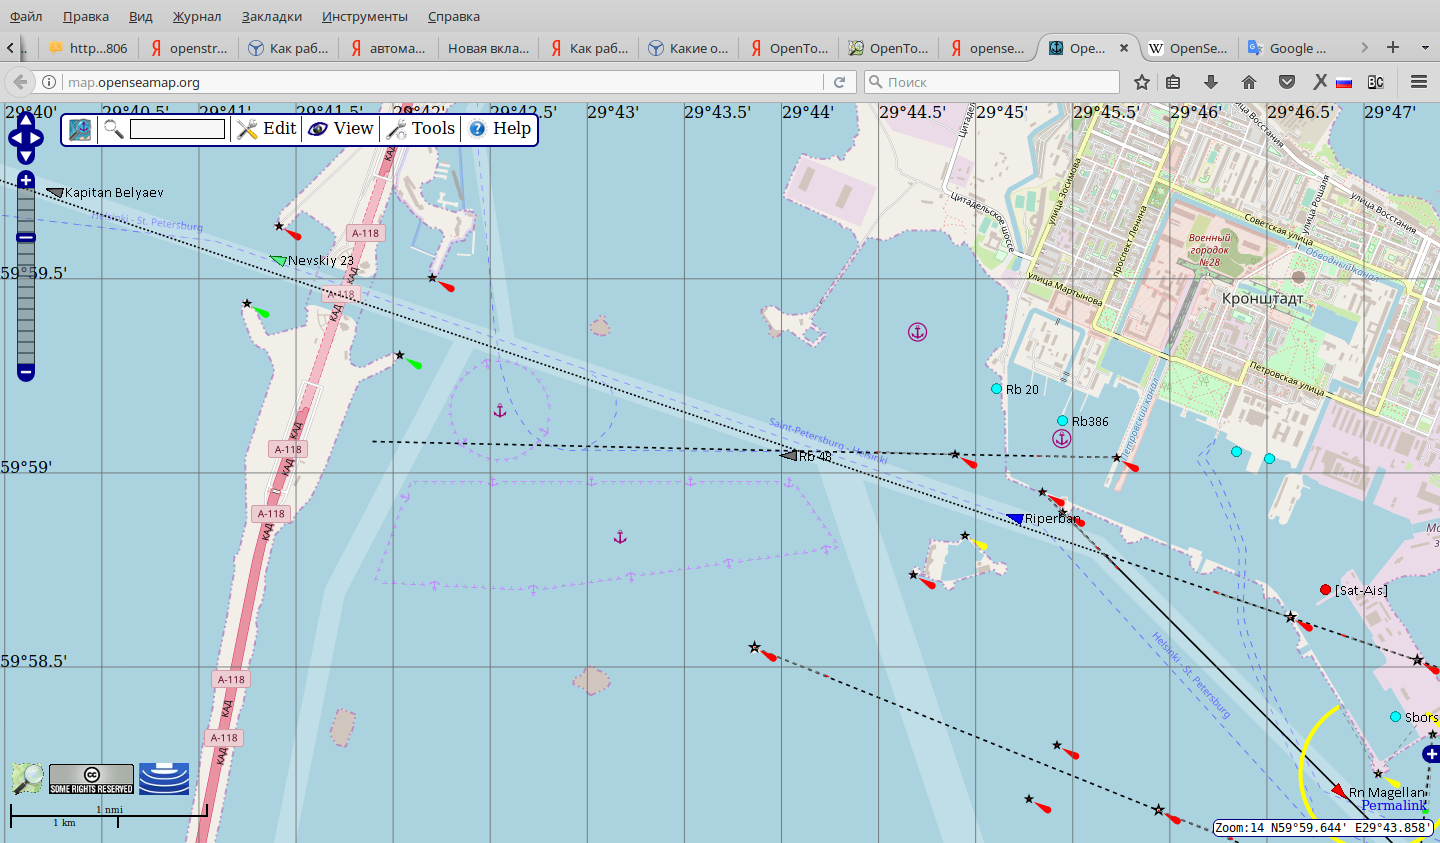 Аис карта судов. Определение места судна на карте. Движение кораблей по карте в реальном времени.